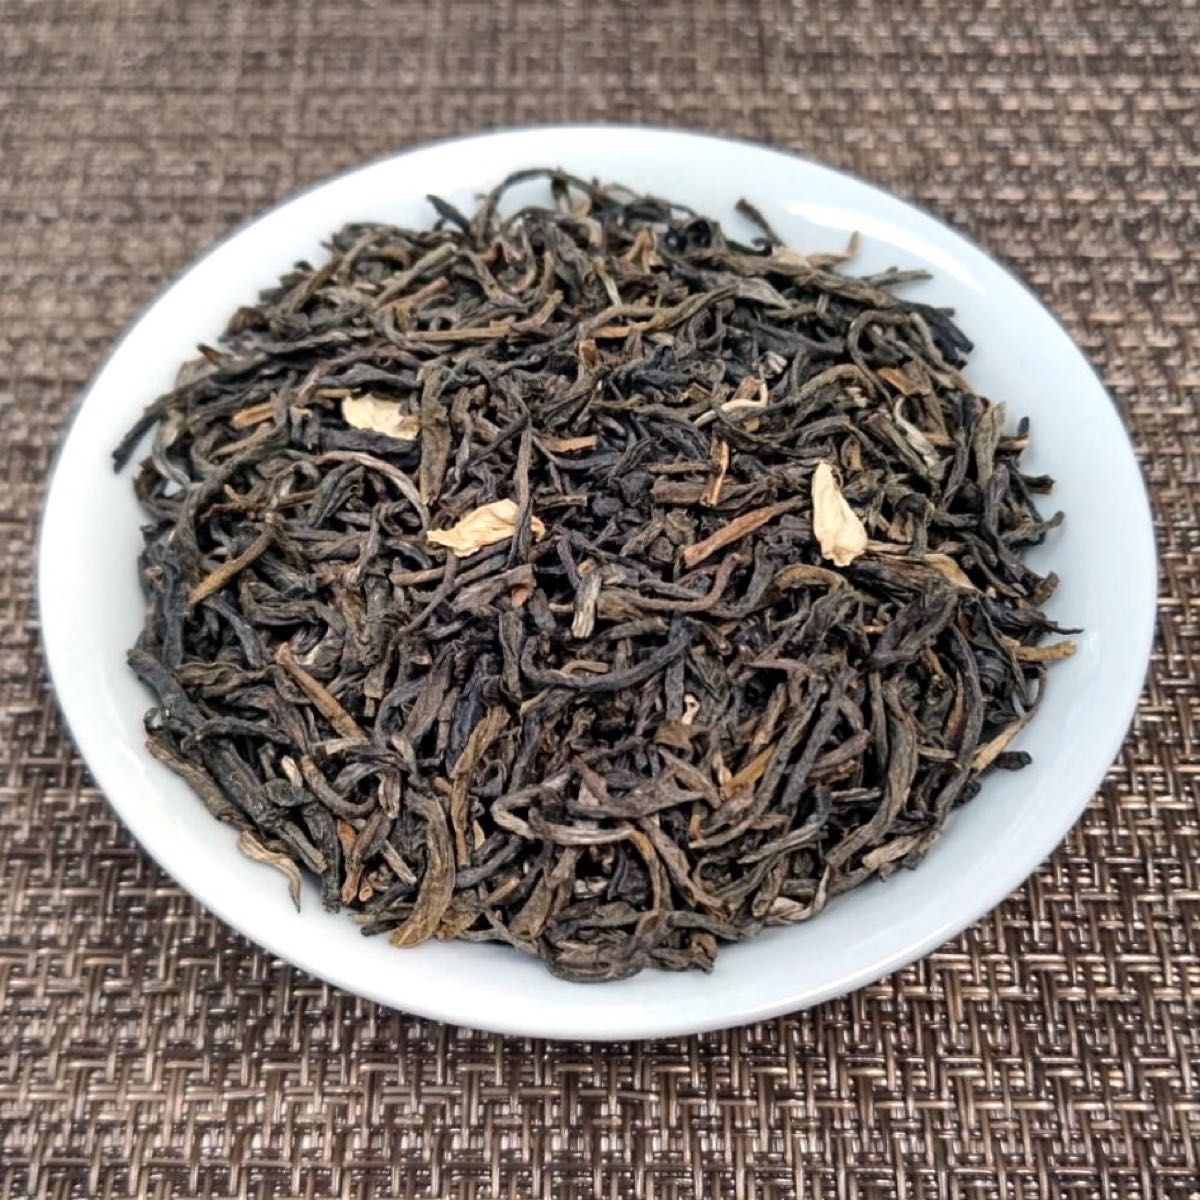 味多福 ジャスミン茶 二級茶葉  300g入り 広西省横県産 茶葉